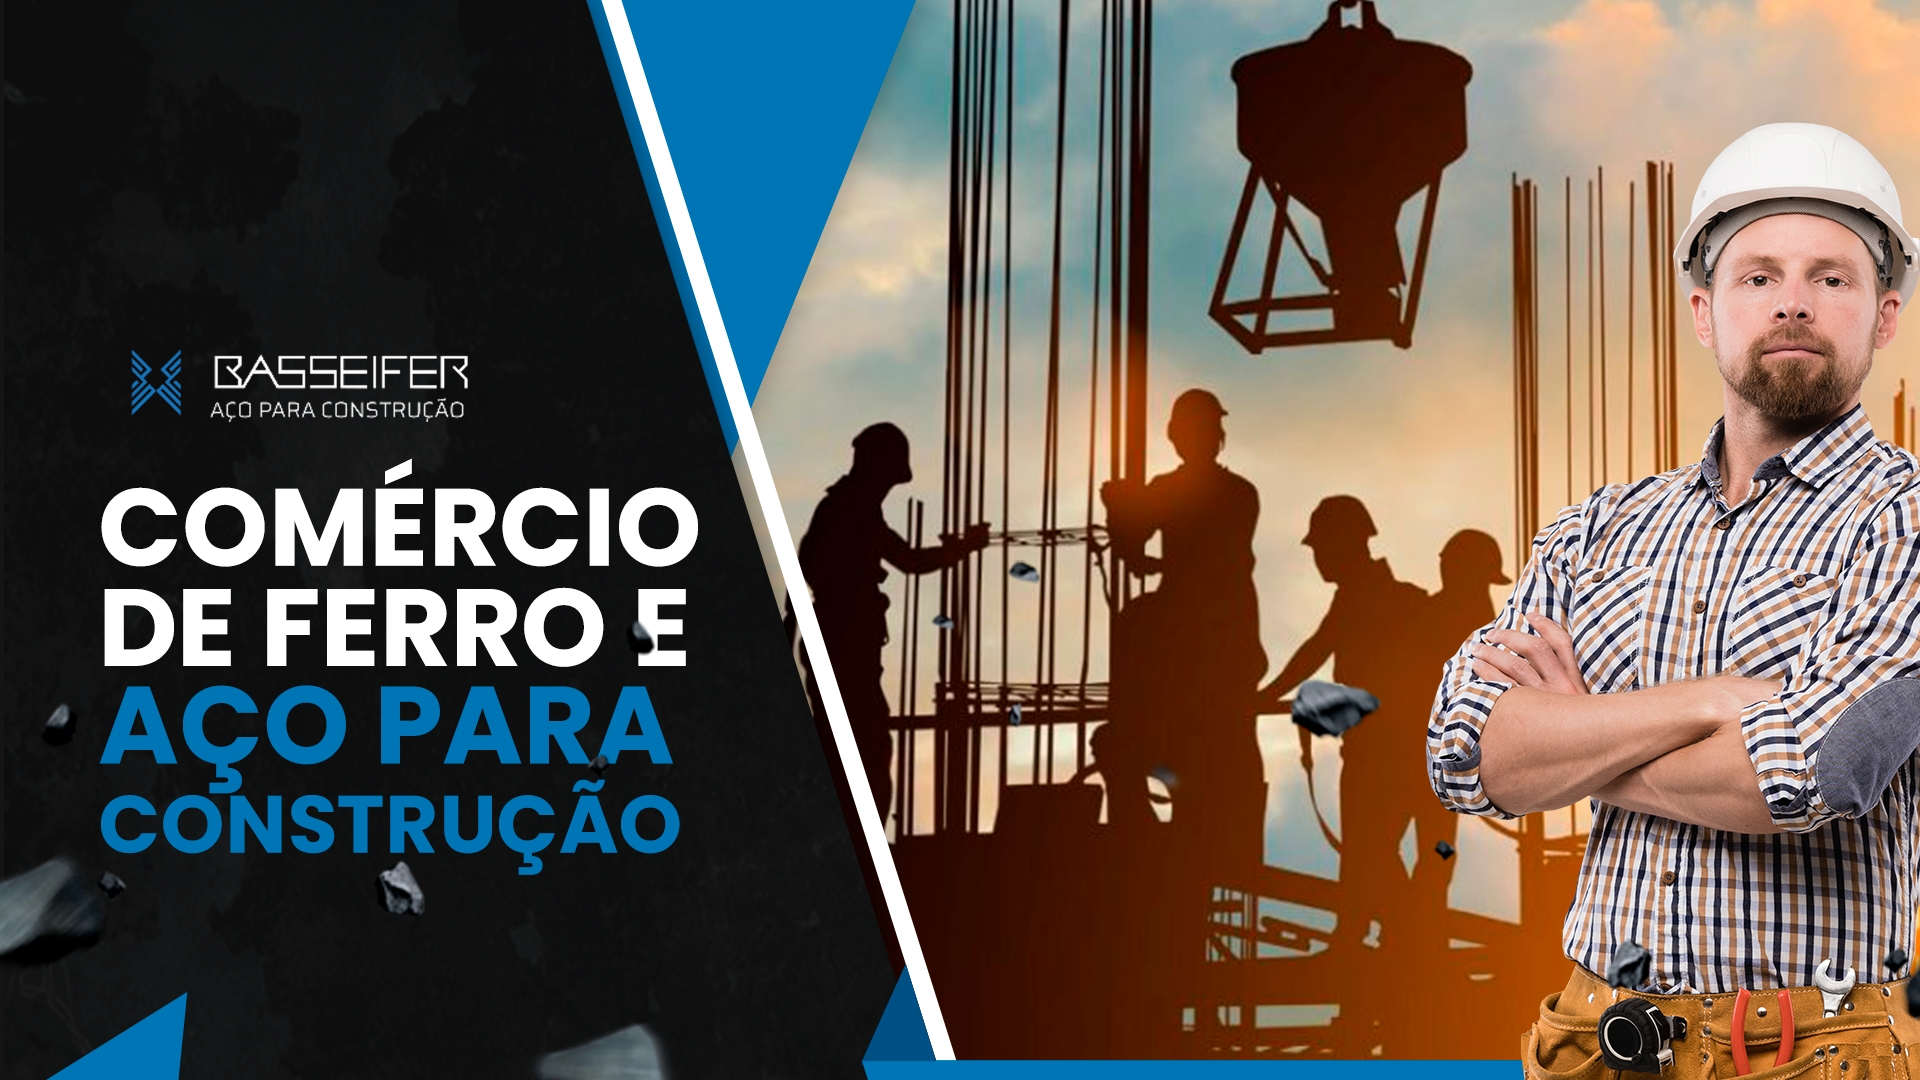 BASSEIFER - COMÉRCIO DE FERRO E AÇO PARA CONSTRUÇÃO Ferro para Construção Malha POP Sorocaba Tela para Concreto